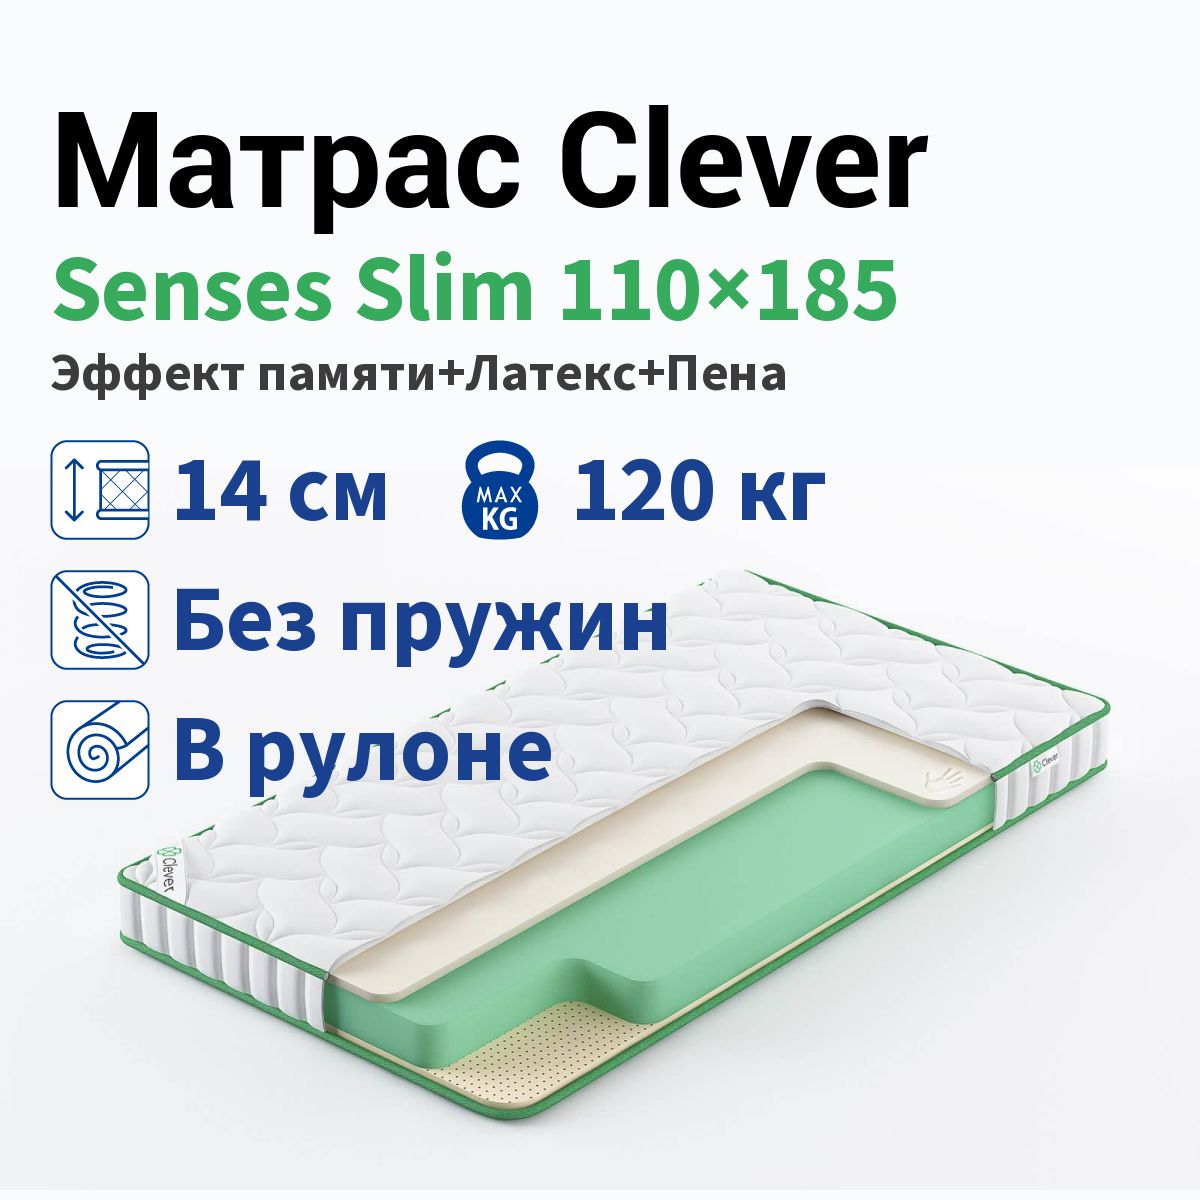 Матрас Clever Senses Slim 110x185